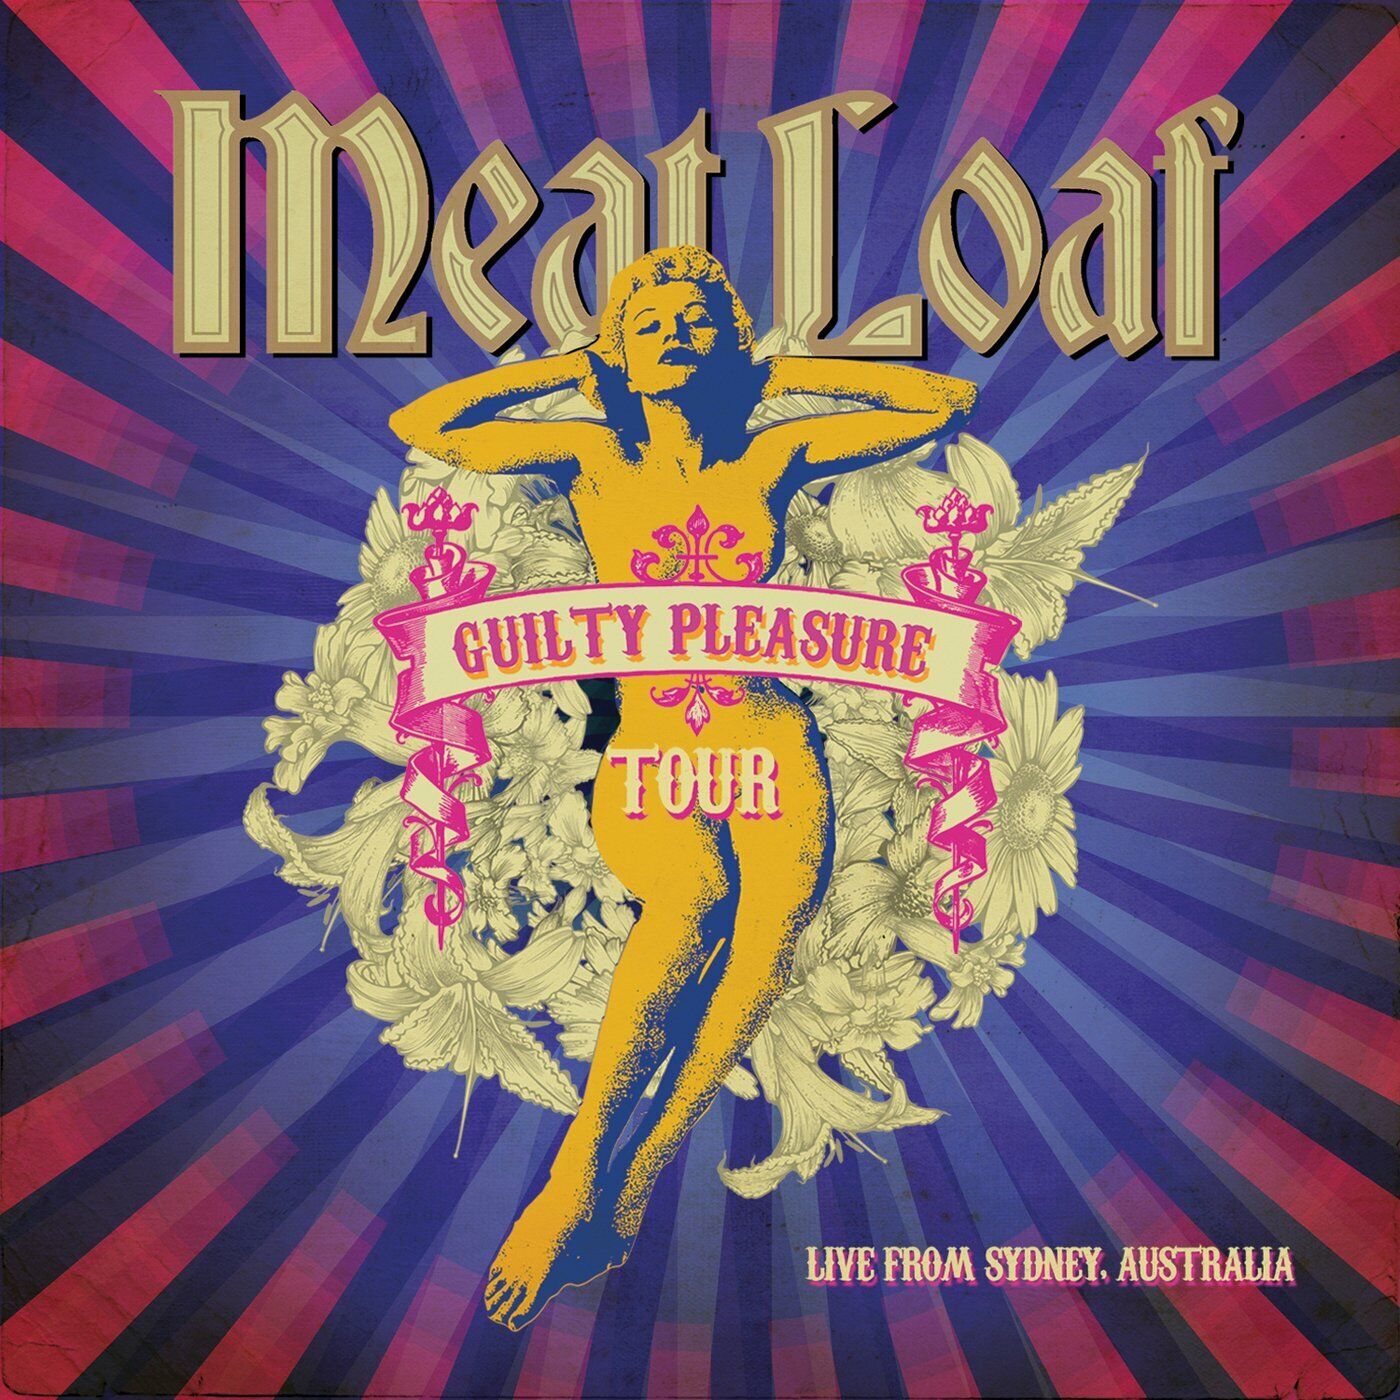 MEAT LOAF - Guilty Pleasure Tour - Live From Sydney, Australia [CLEAR/PURPLE/BLUE 2-LP+DVD DLP]